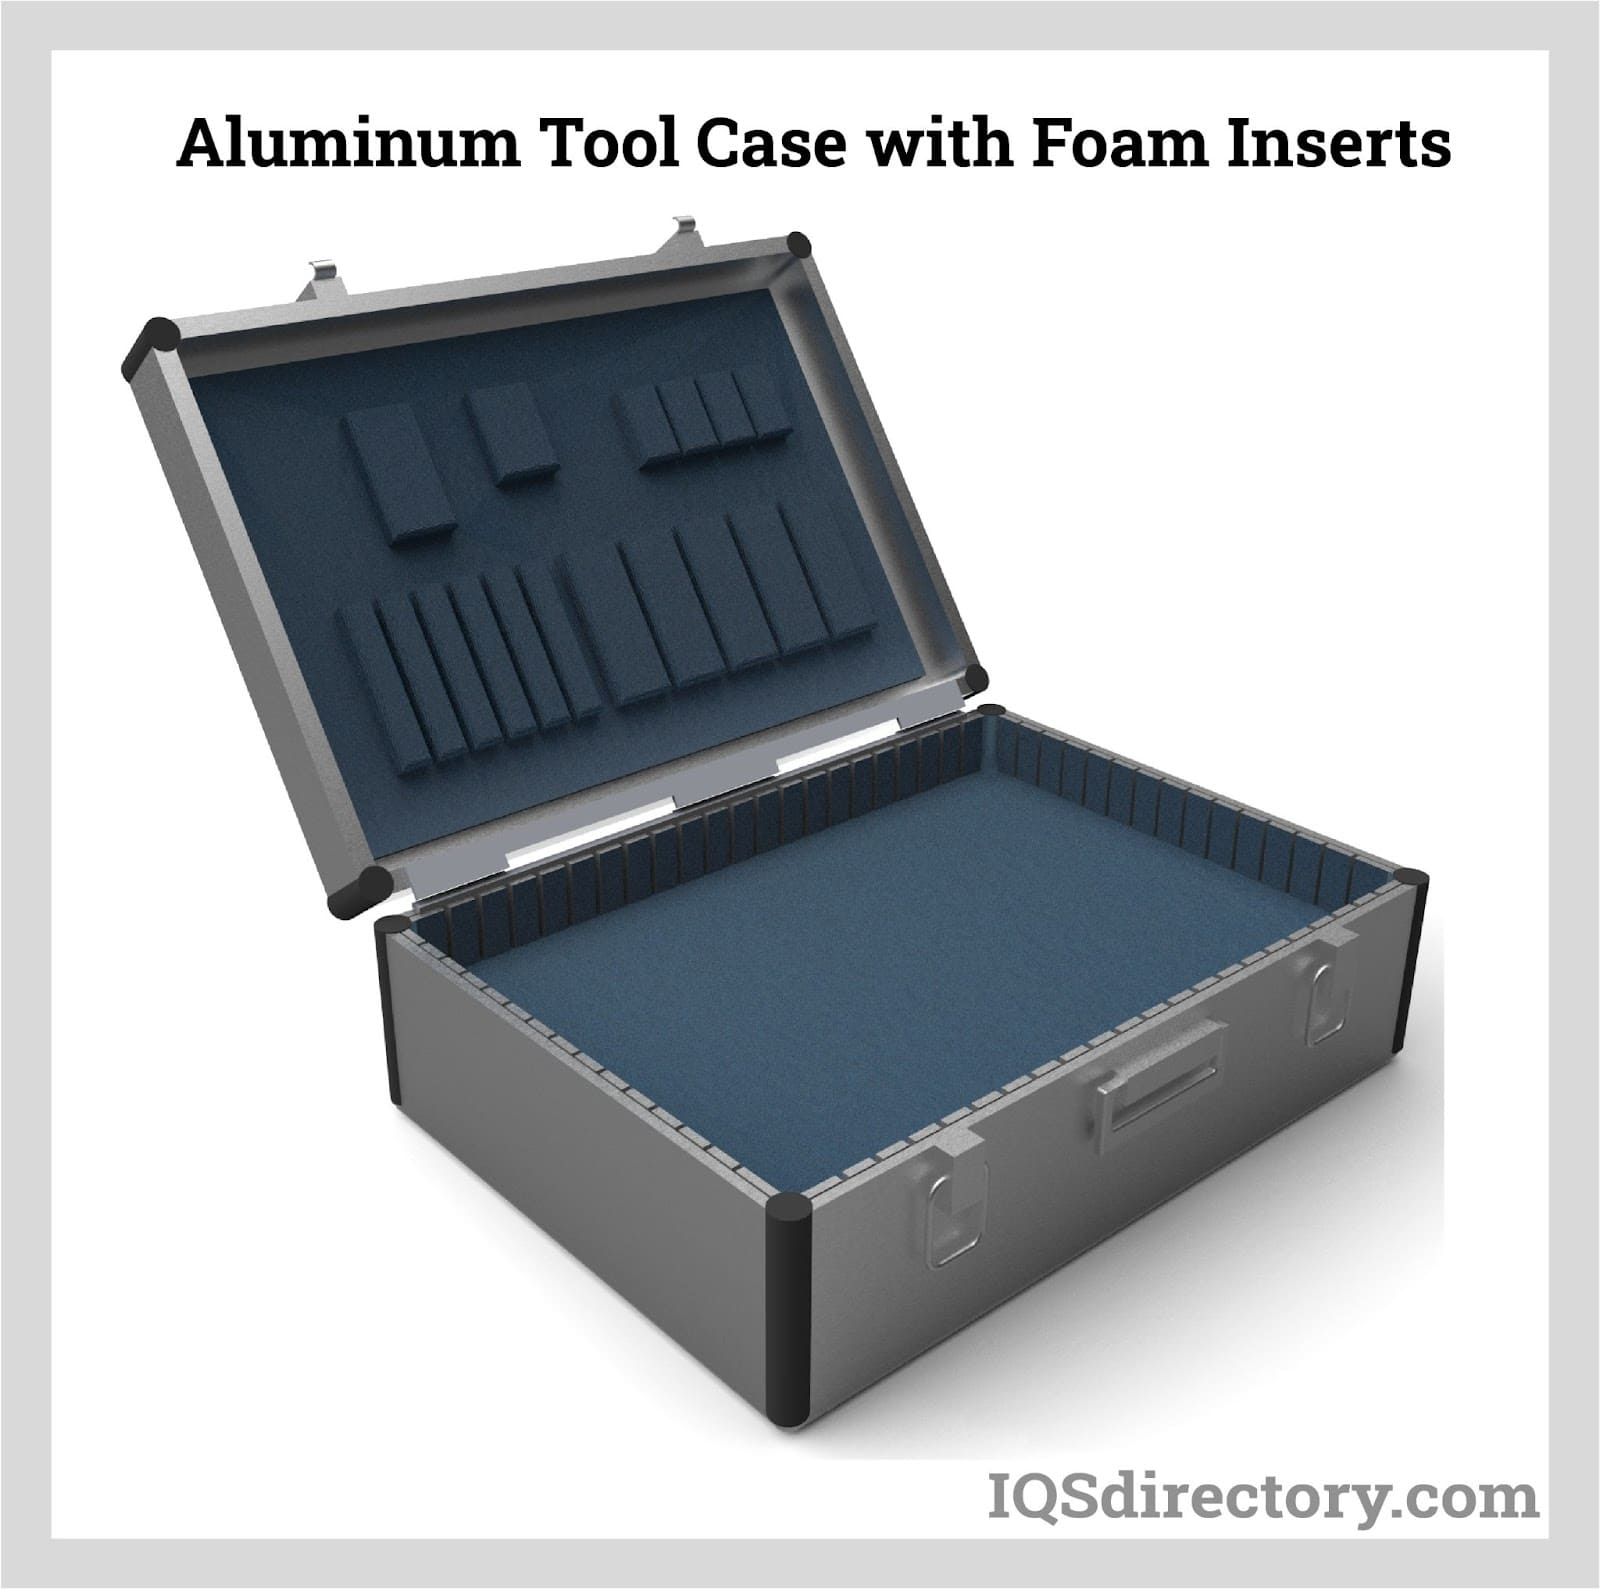 Aluminum Tool Case with Foam Inserts